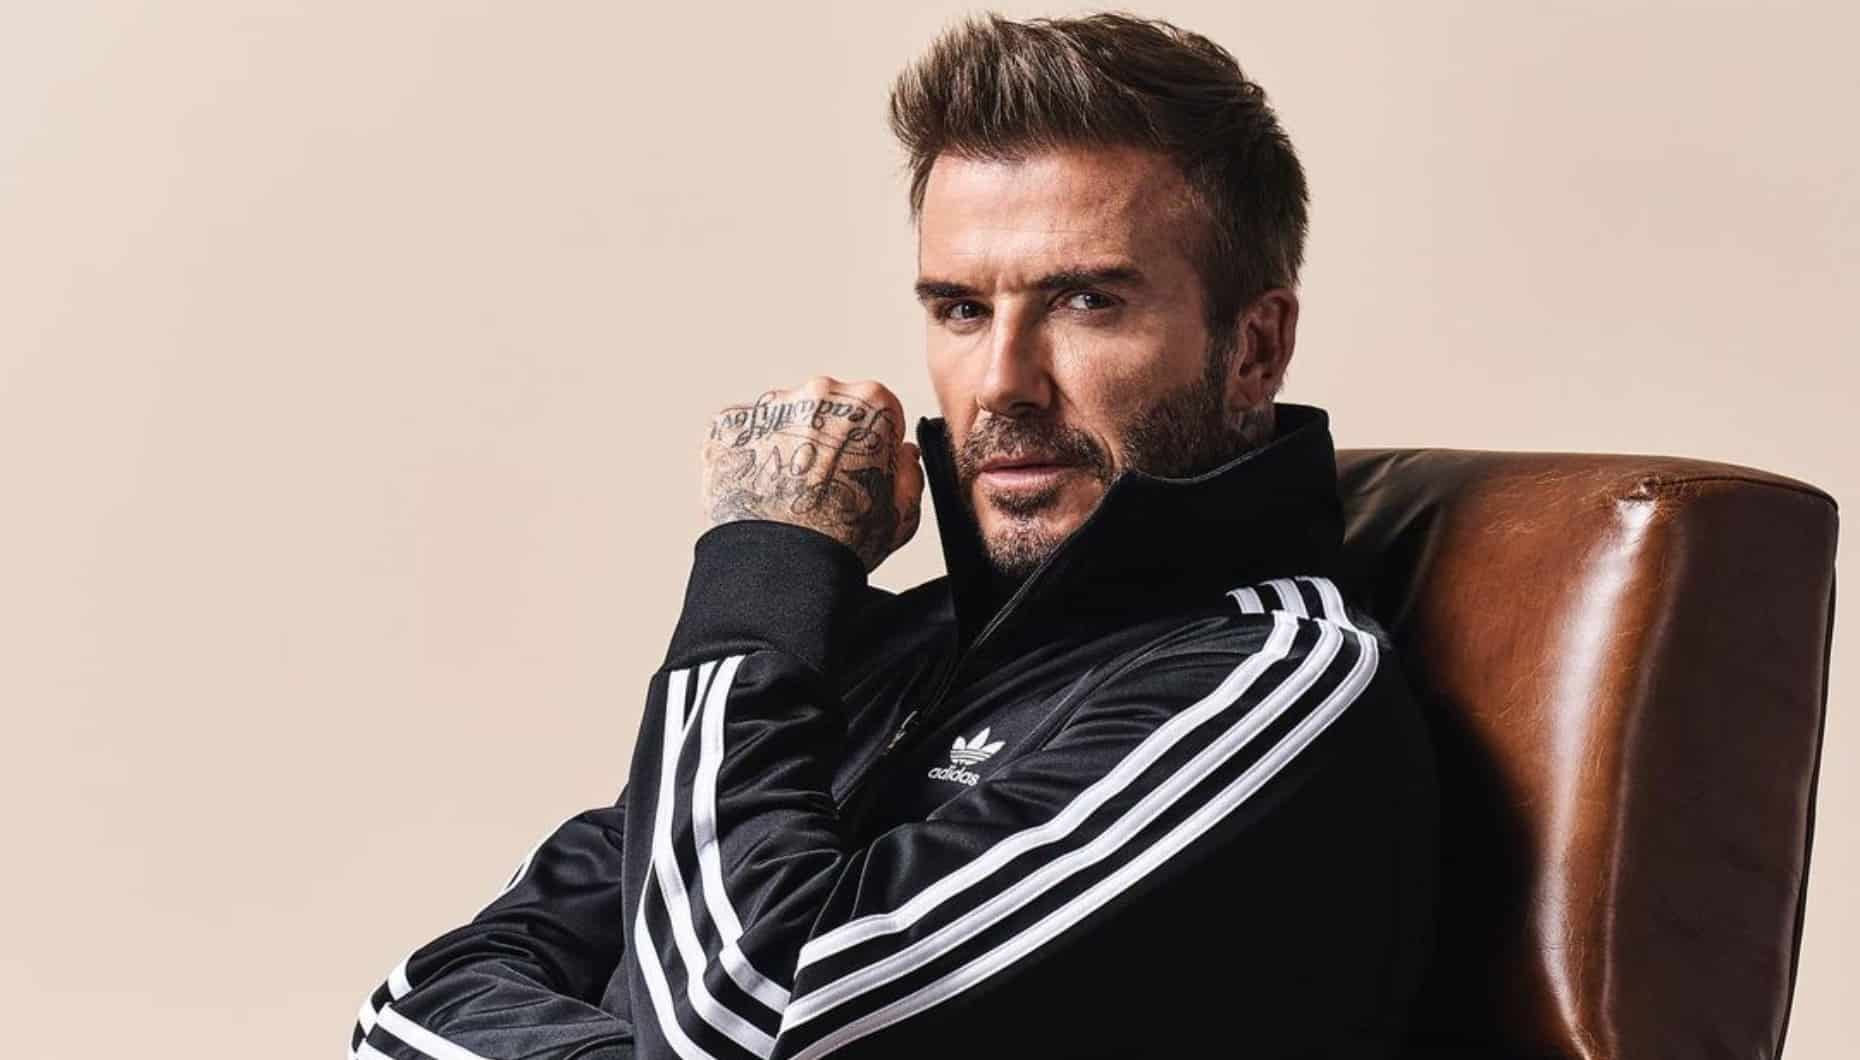 Série documental da Netflix sobre David Beckham estreia dia 4 de outubro